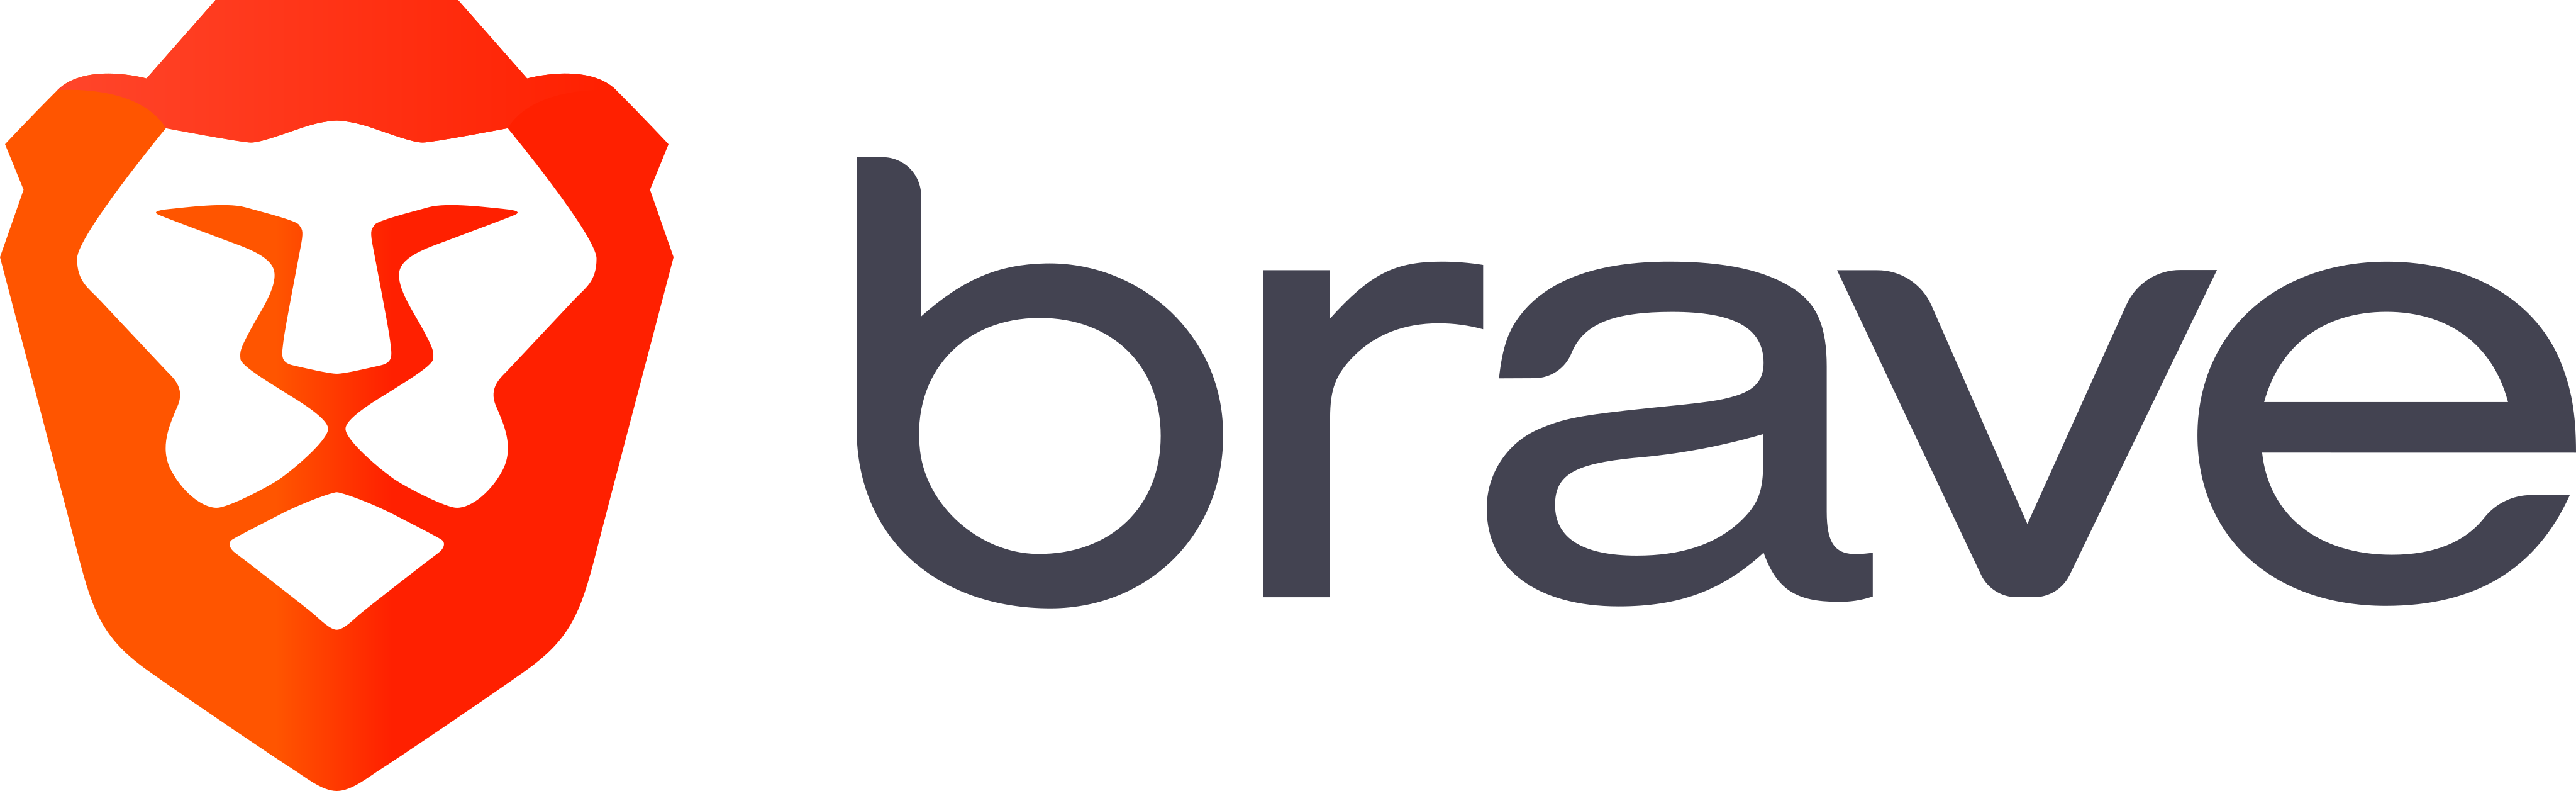 brave logo - Brave Logo